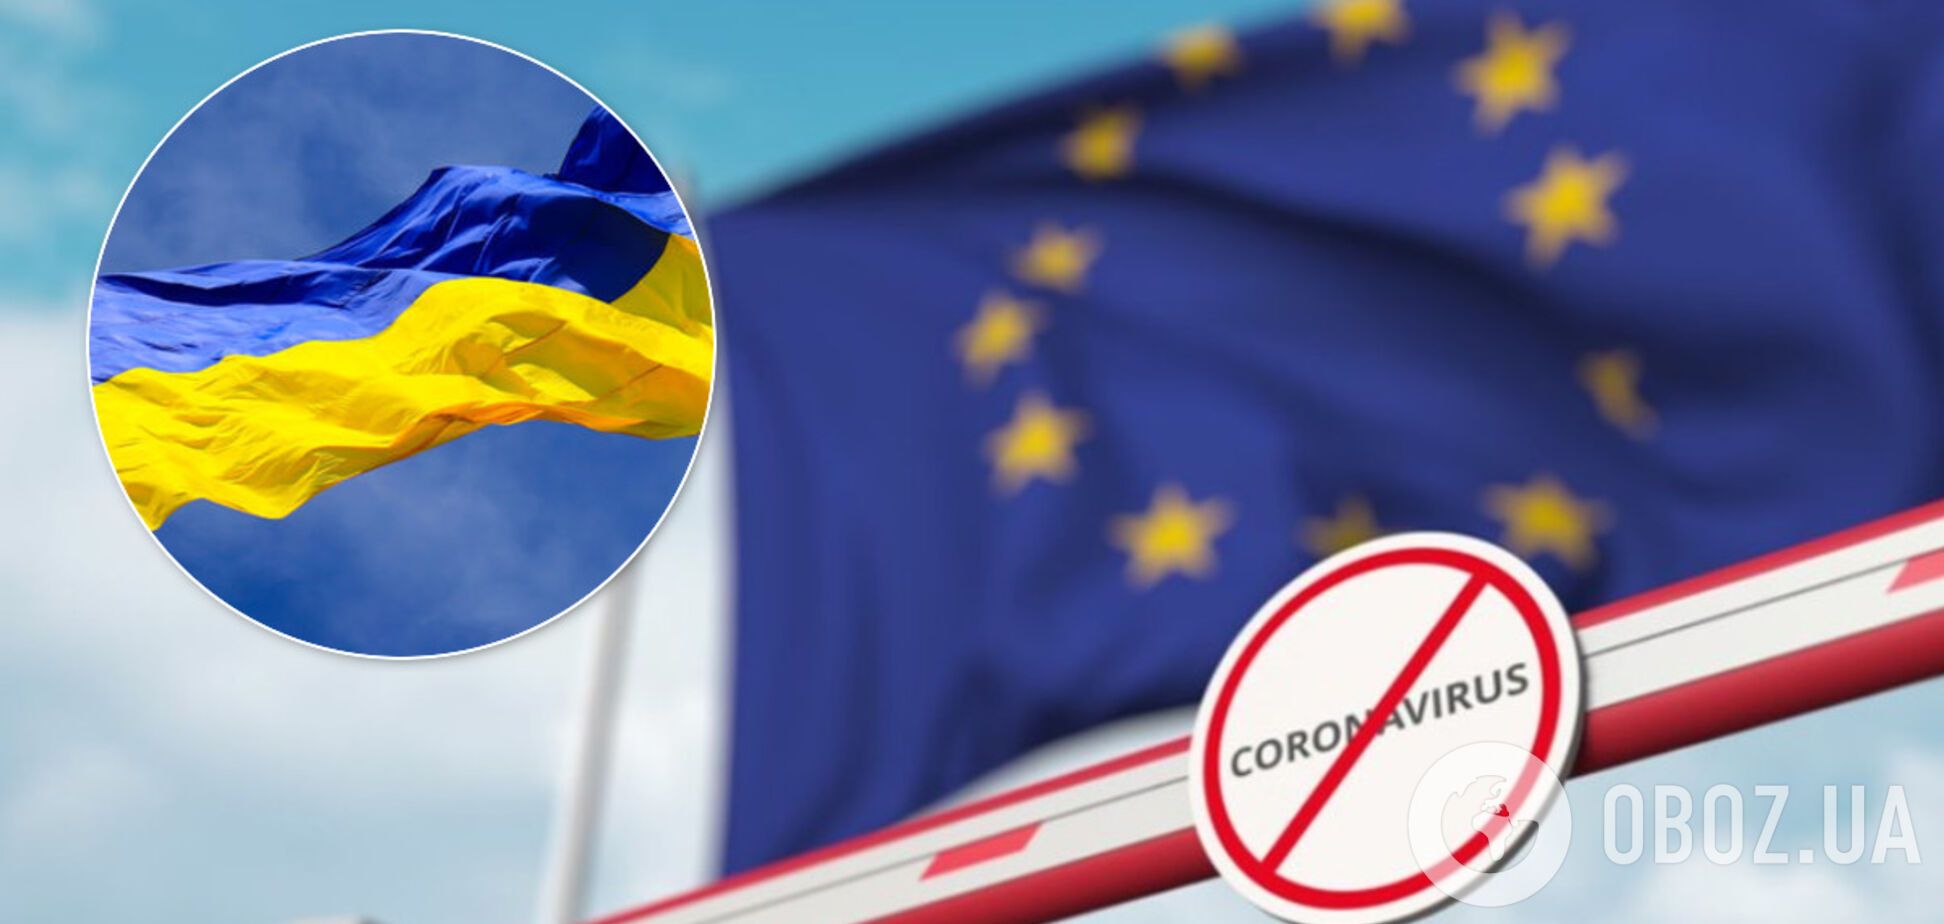 ЕС начнет открывать границы для других стран: Украина в список не попала